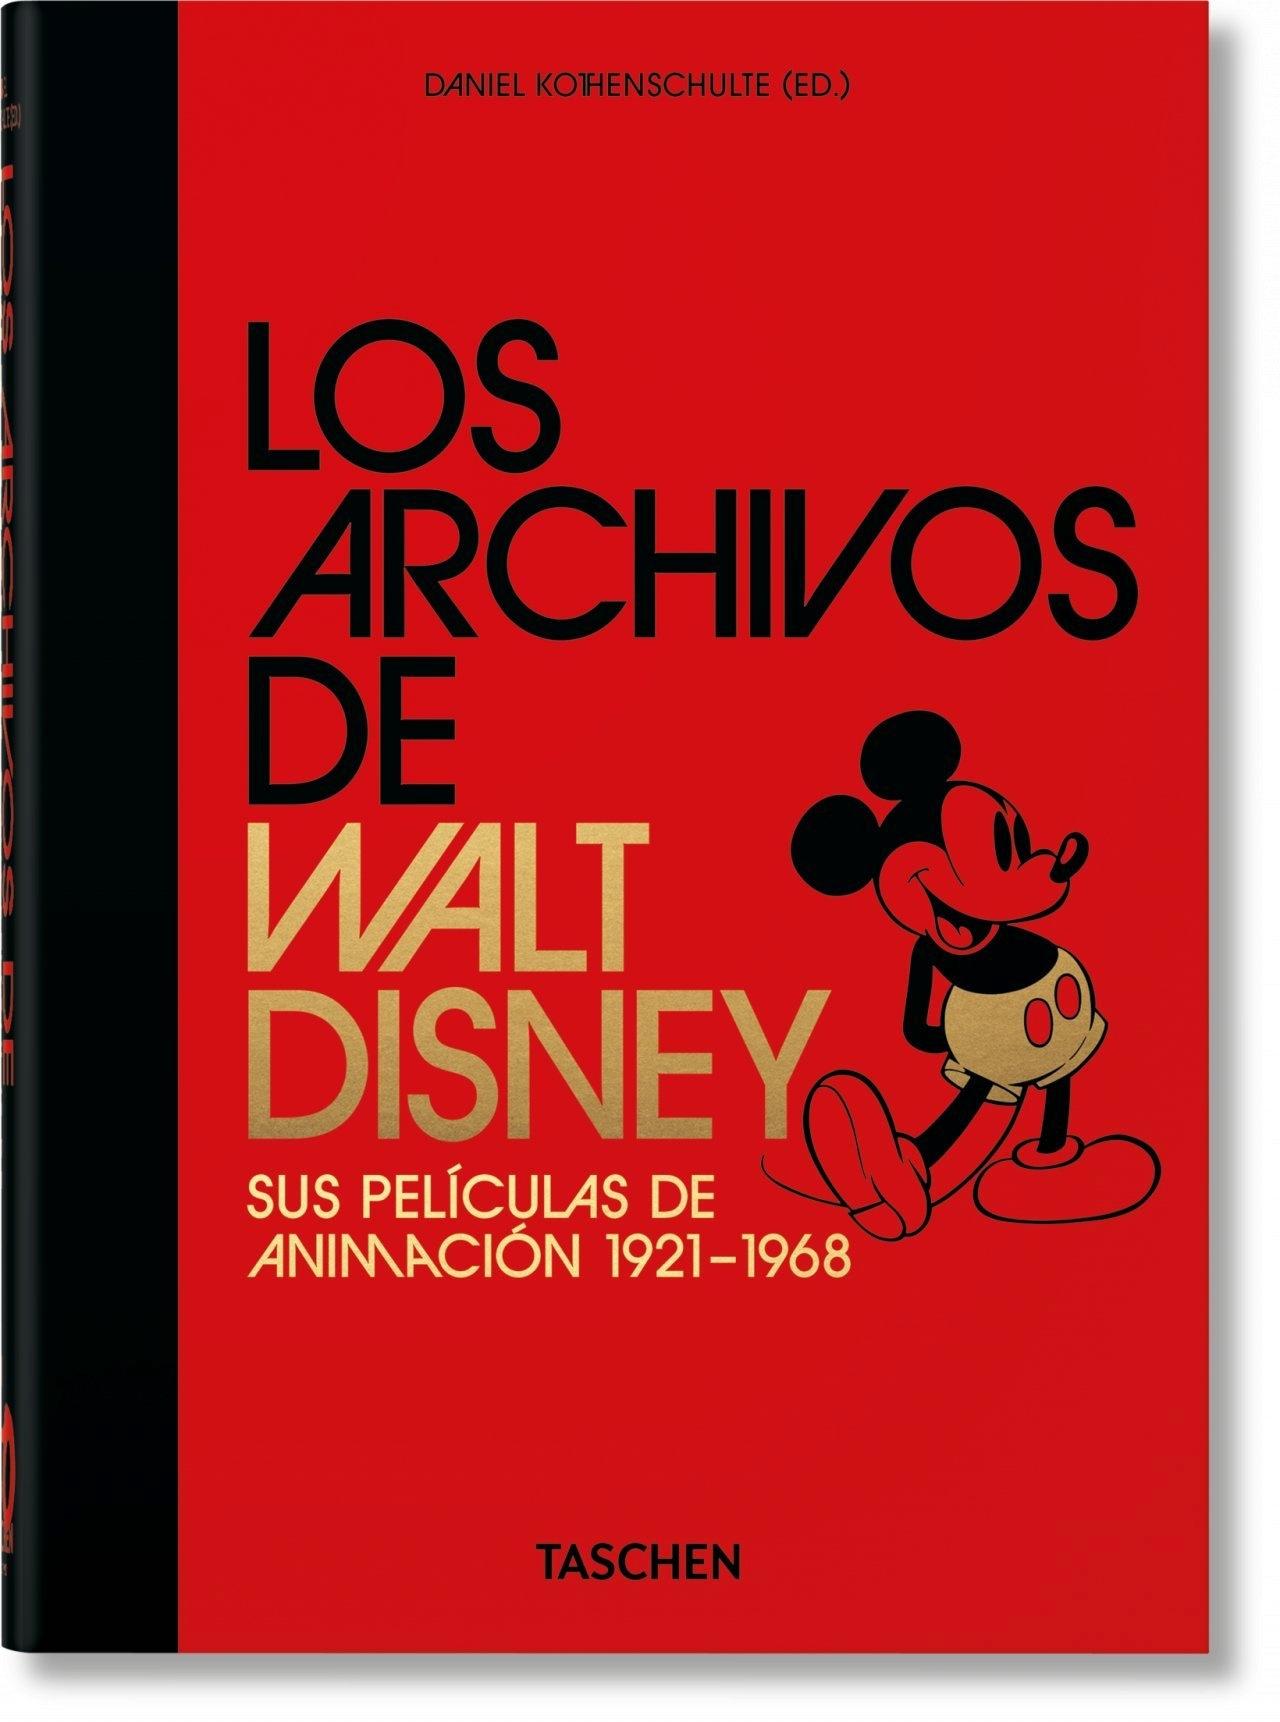 LOS ARCHIVOS DE WALT DISNEY: SUS PELÍCULAS DE ANIMACIÓN. 40TH ANNIVERSARY EDITION. 